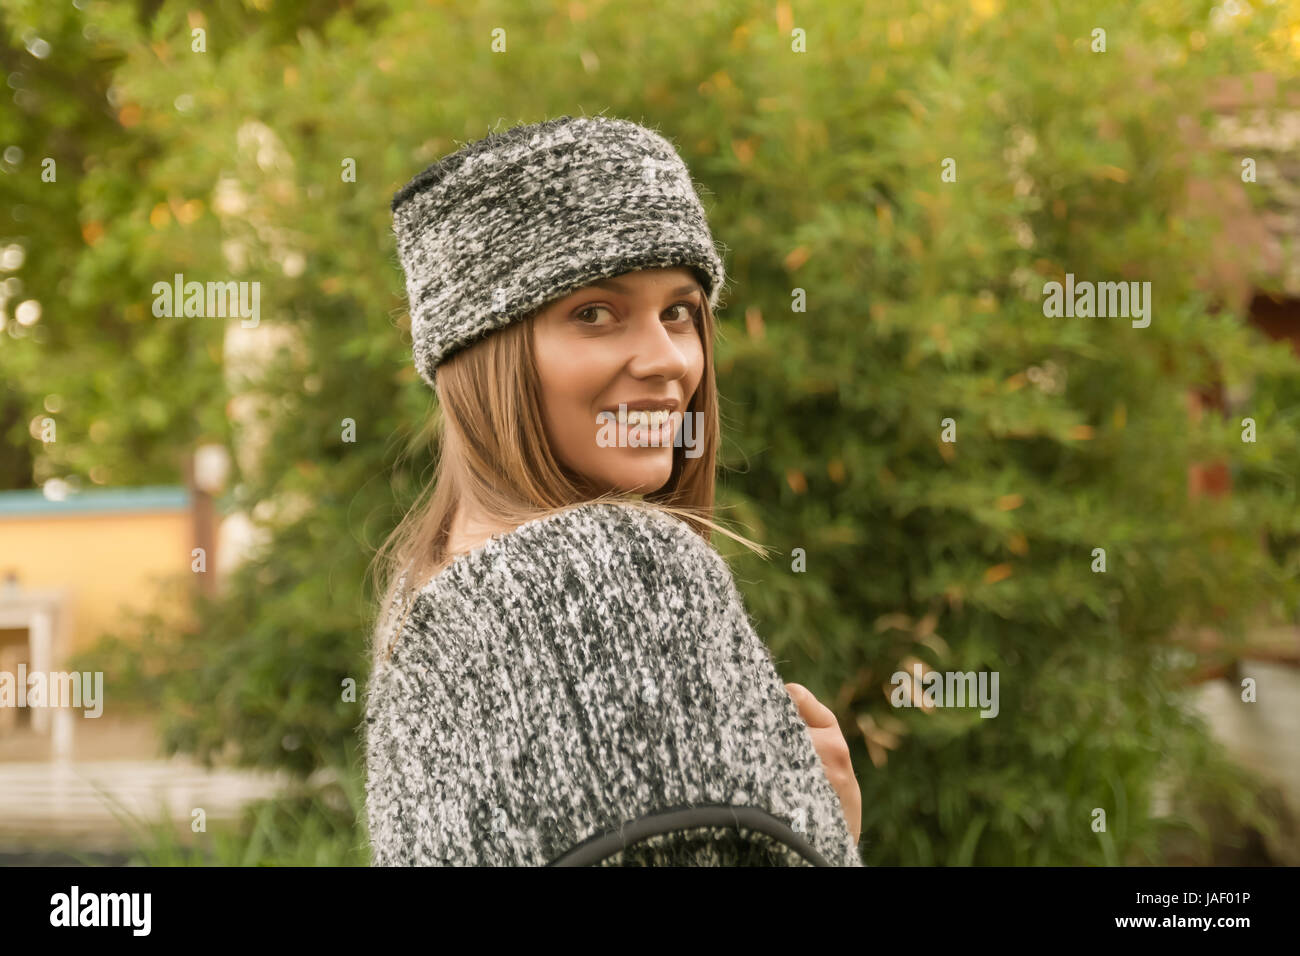 Tête et des épaules, vue latérale, arrière, un jeune adulte, Caucasian woman smiling outdoors wearing sweater et chapeau, vêtements ethniques (Europe de l'Est, se Banque D'Images